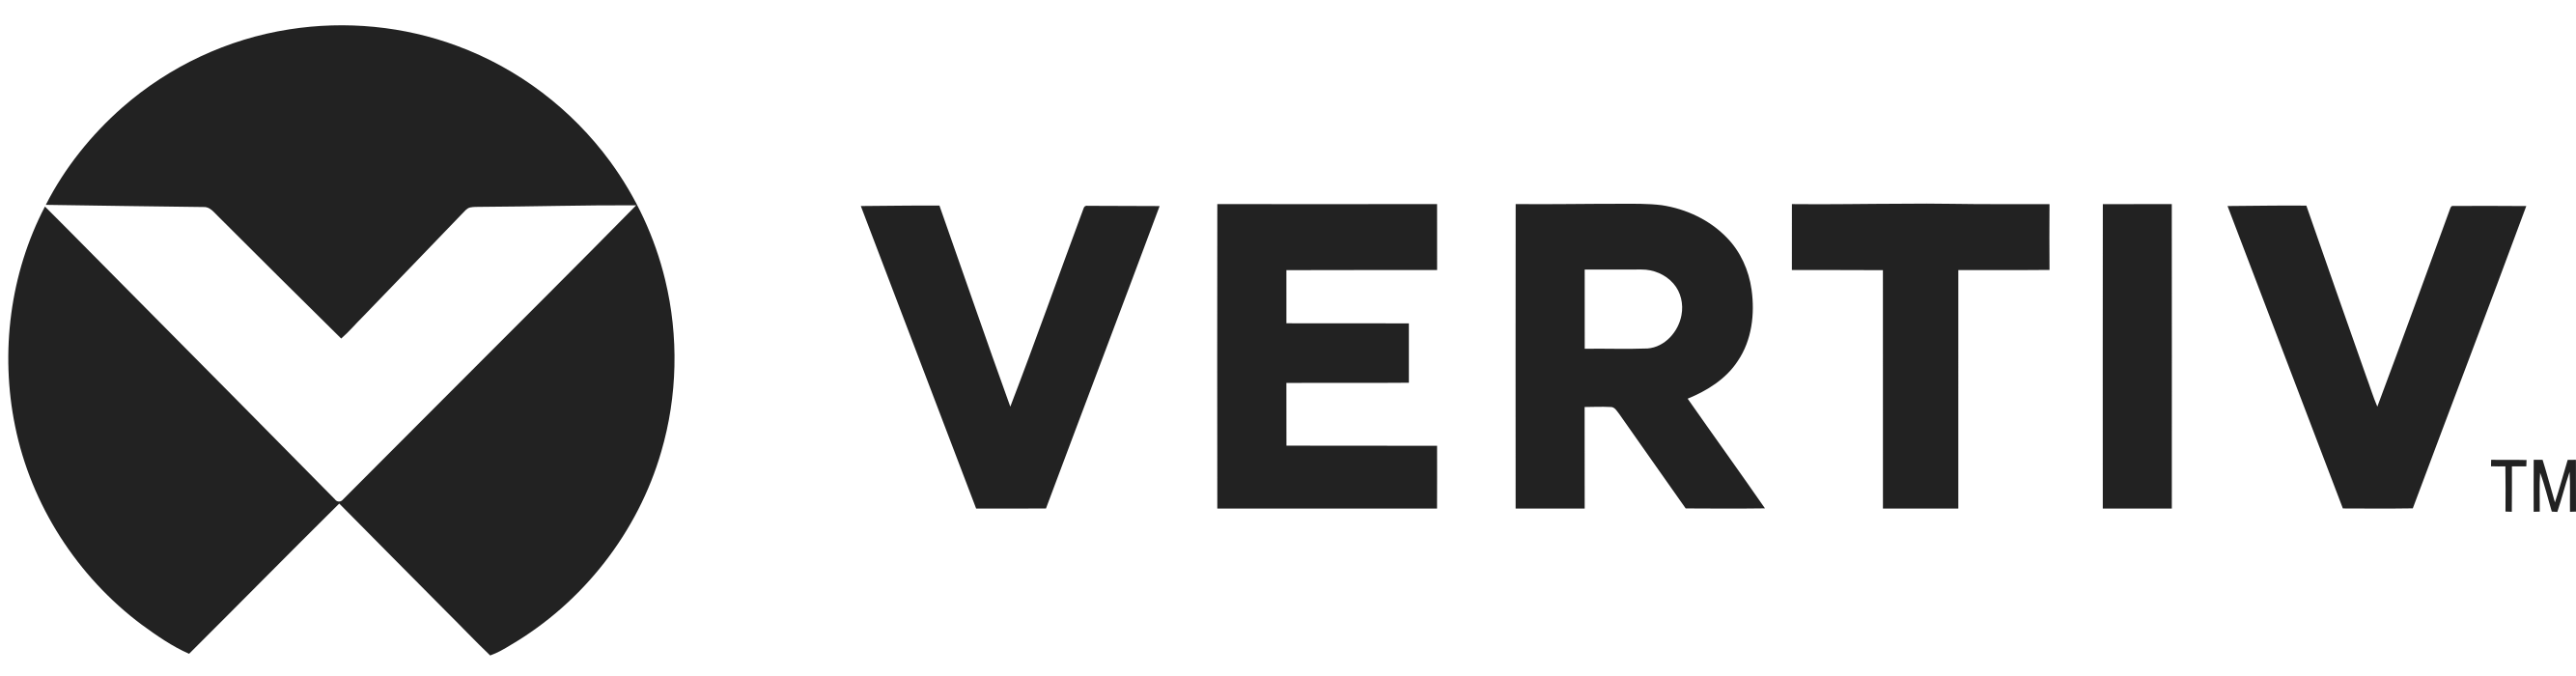 vertiv_logo